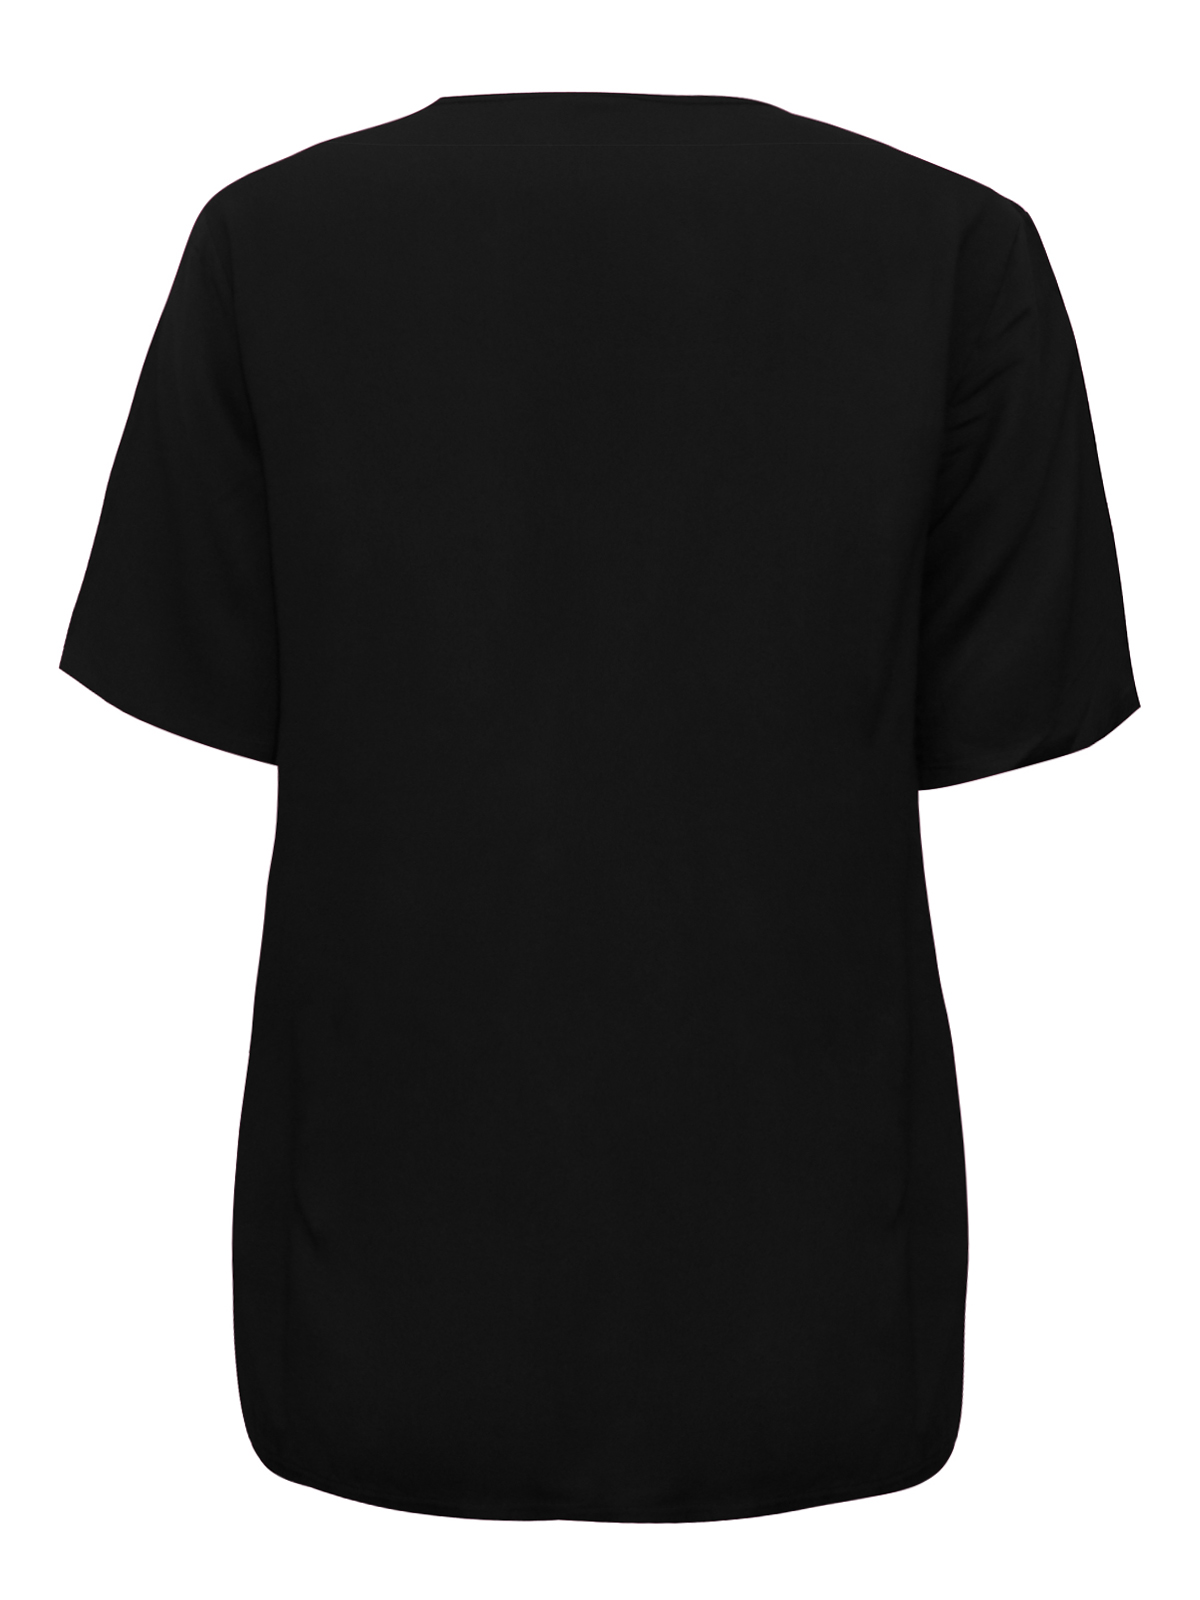 BLACK Short Sleeve Button Through Top - Plus Size 18 to 26 (EU 44 to 52)